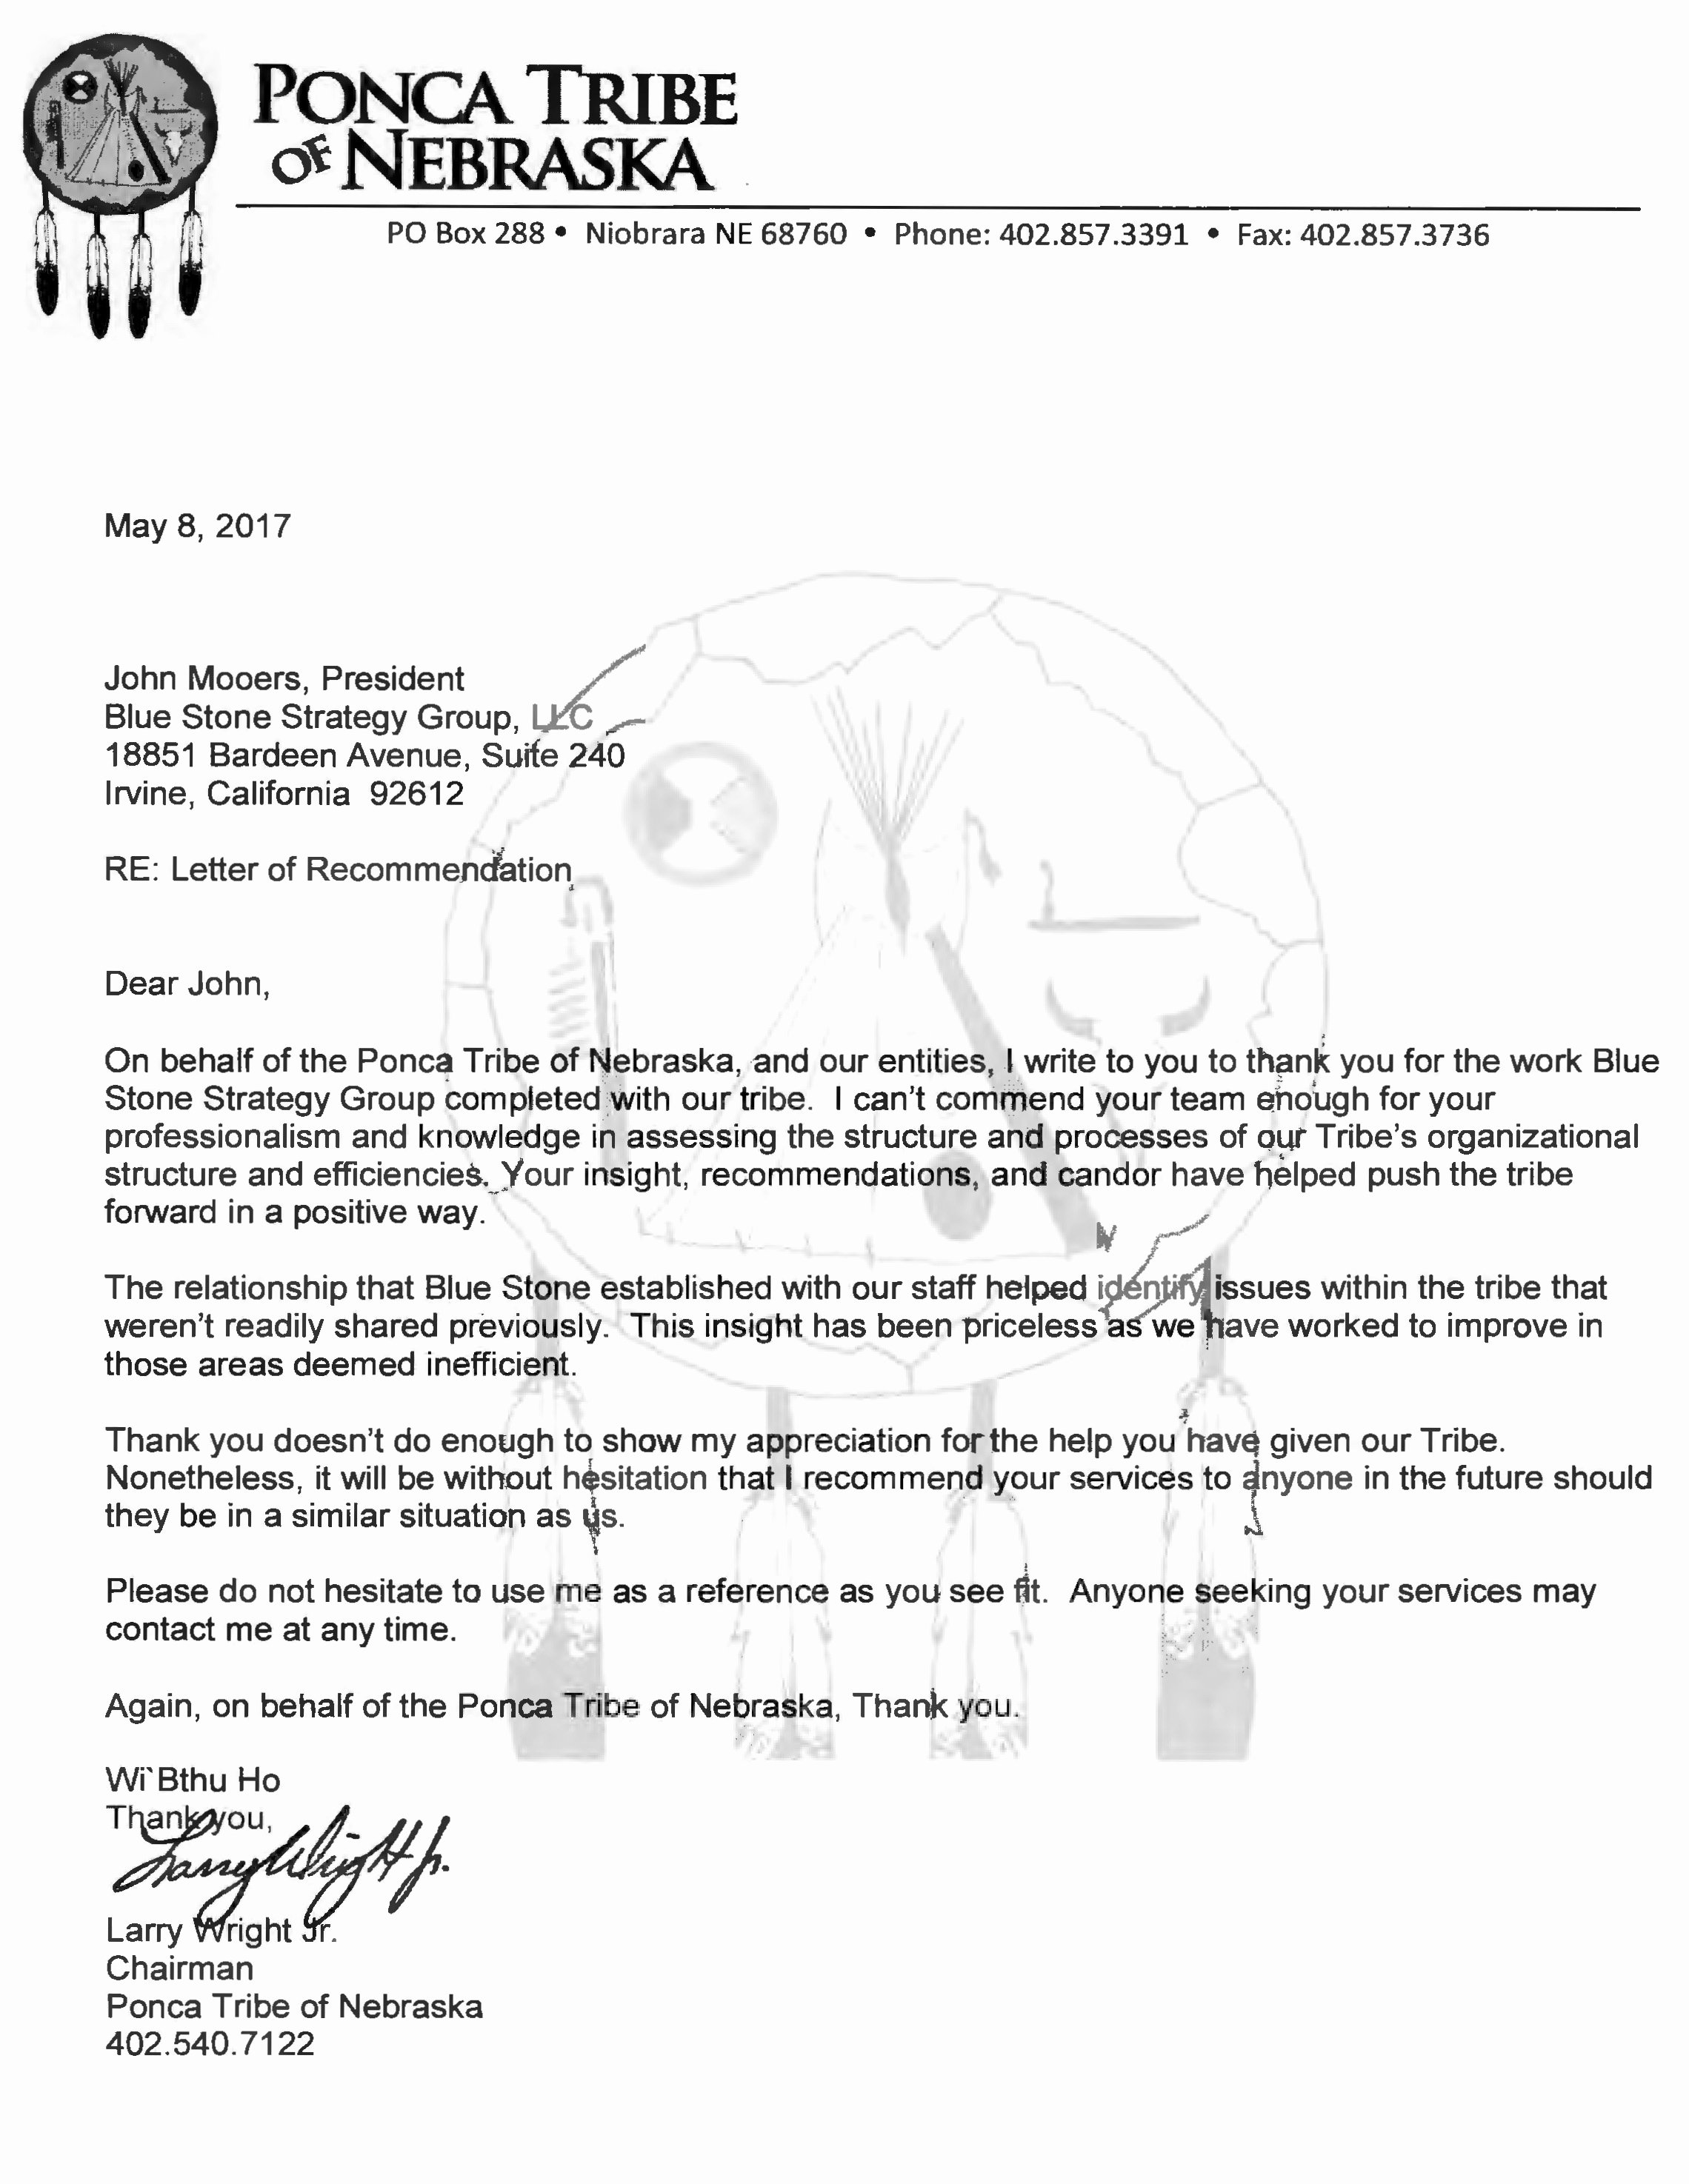 John Nash Recommendation Letter Elegant Bssg Ponca Of Nebraska Letter Of Re Mendation 05 08 17